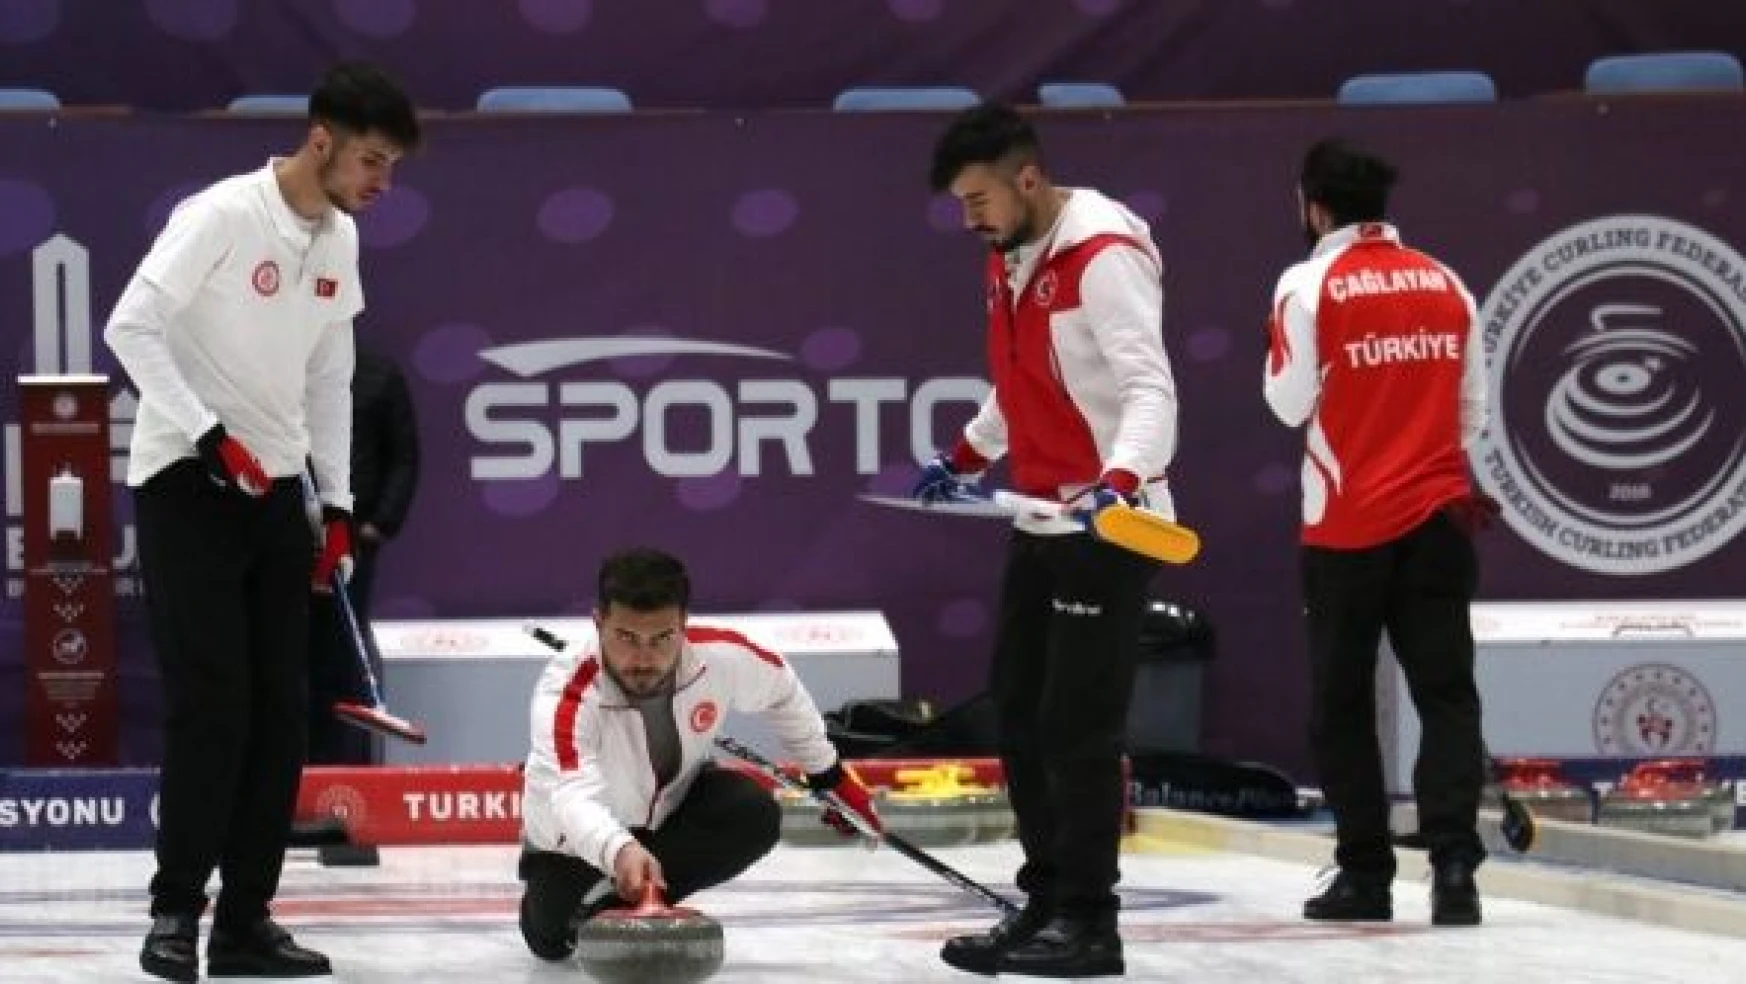 Milli curlingciler, başarılarını taçlandırmak istiyor